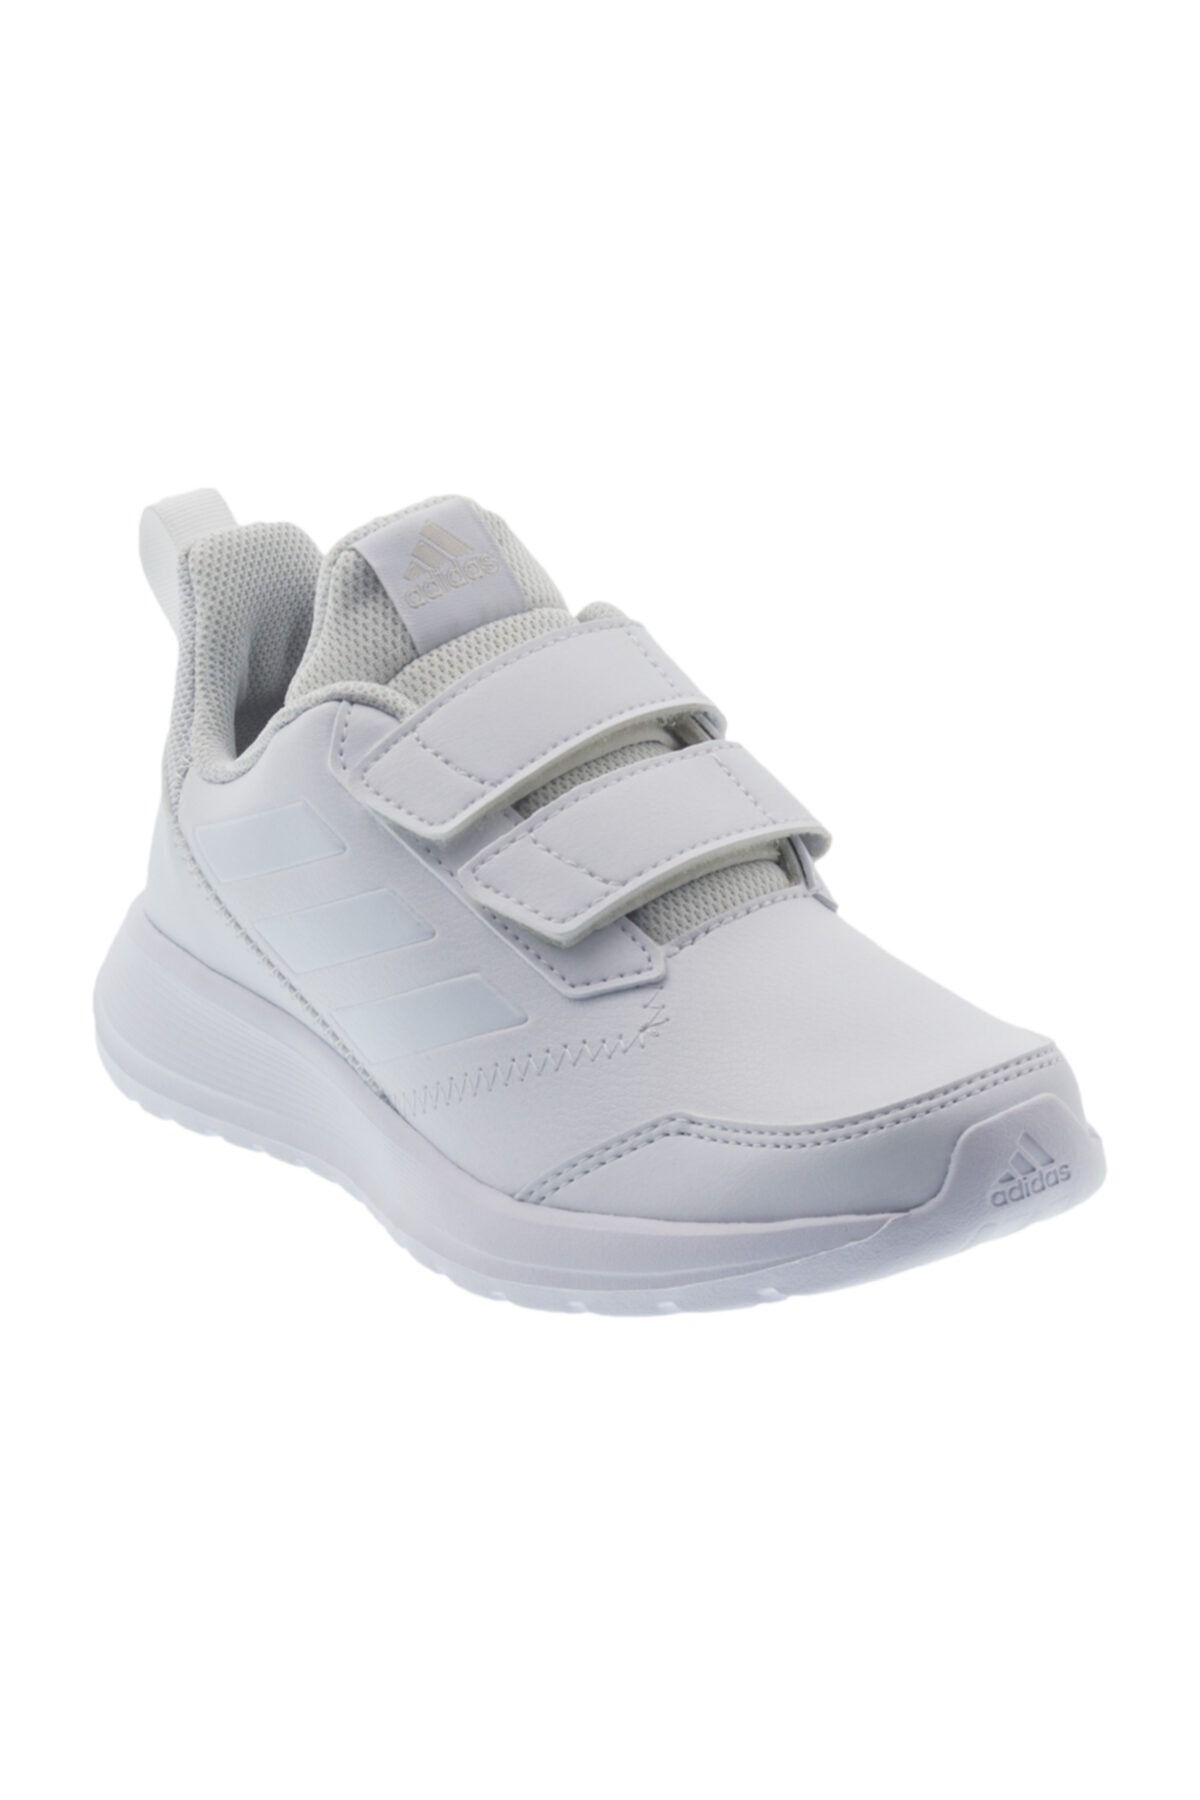 adidas ALTARUN CF K Beyaz Unisex Çocuk Koşu Ayakkabısı 100409021